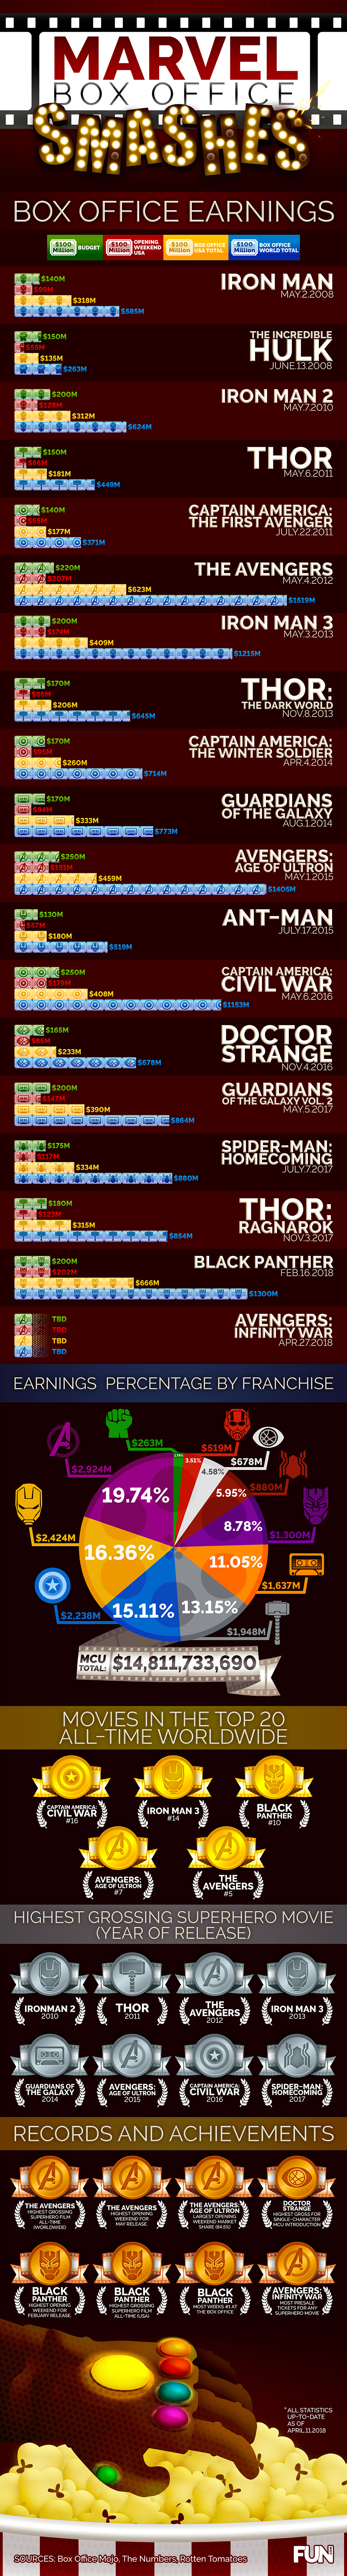 Marvel Box Office Smashes